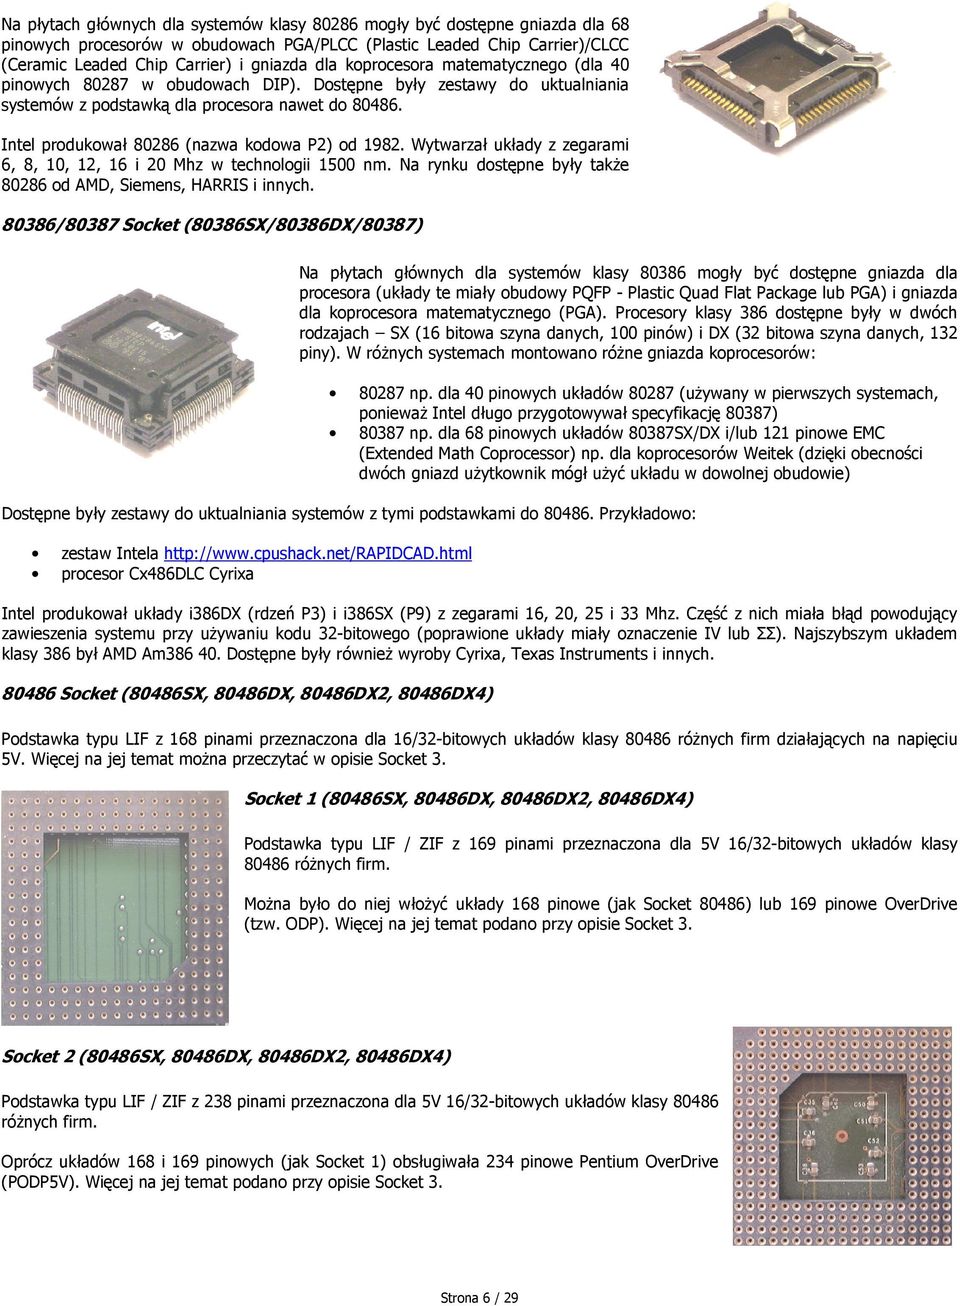 Intel produkował 80286 (nazwa kodowa P2) od 1982. Wytwarzał układy z zegarami 6, 8, 10, 12, 16 i 20 Mhz w technologii 1500 nm. Na rynku dostępne były także 80286 od AMD, Siemens, HARRIS i innych.